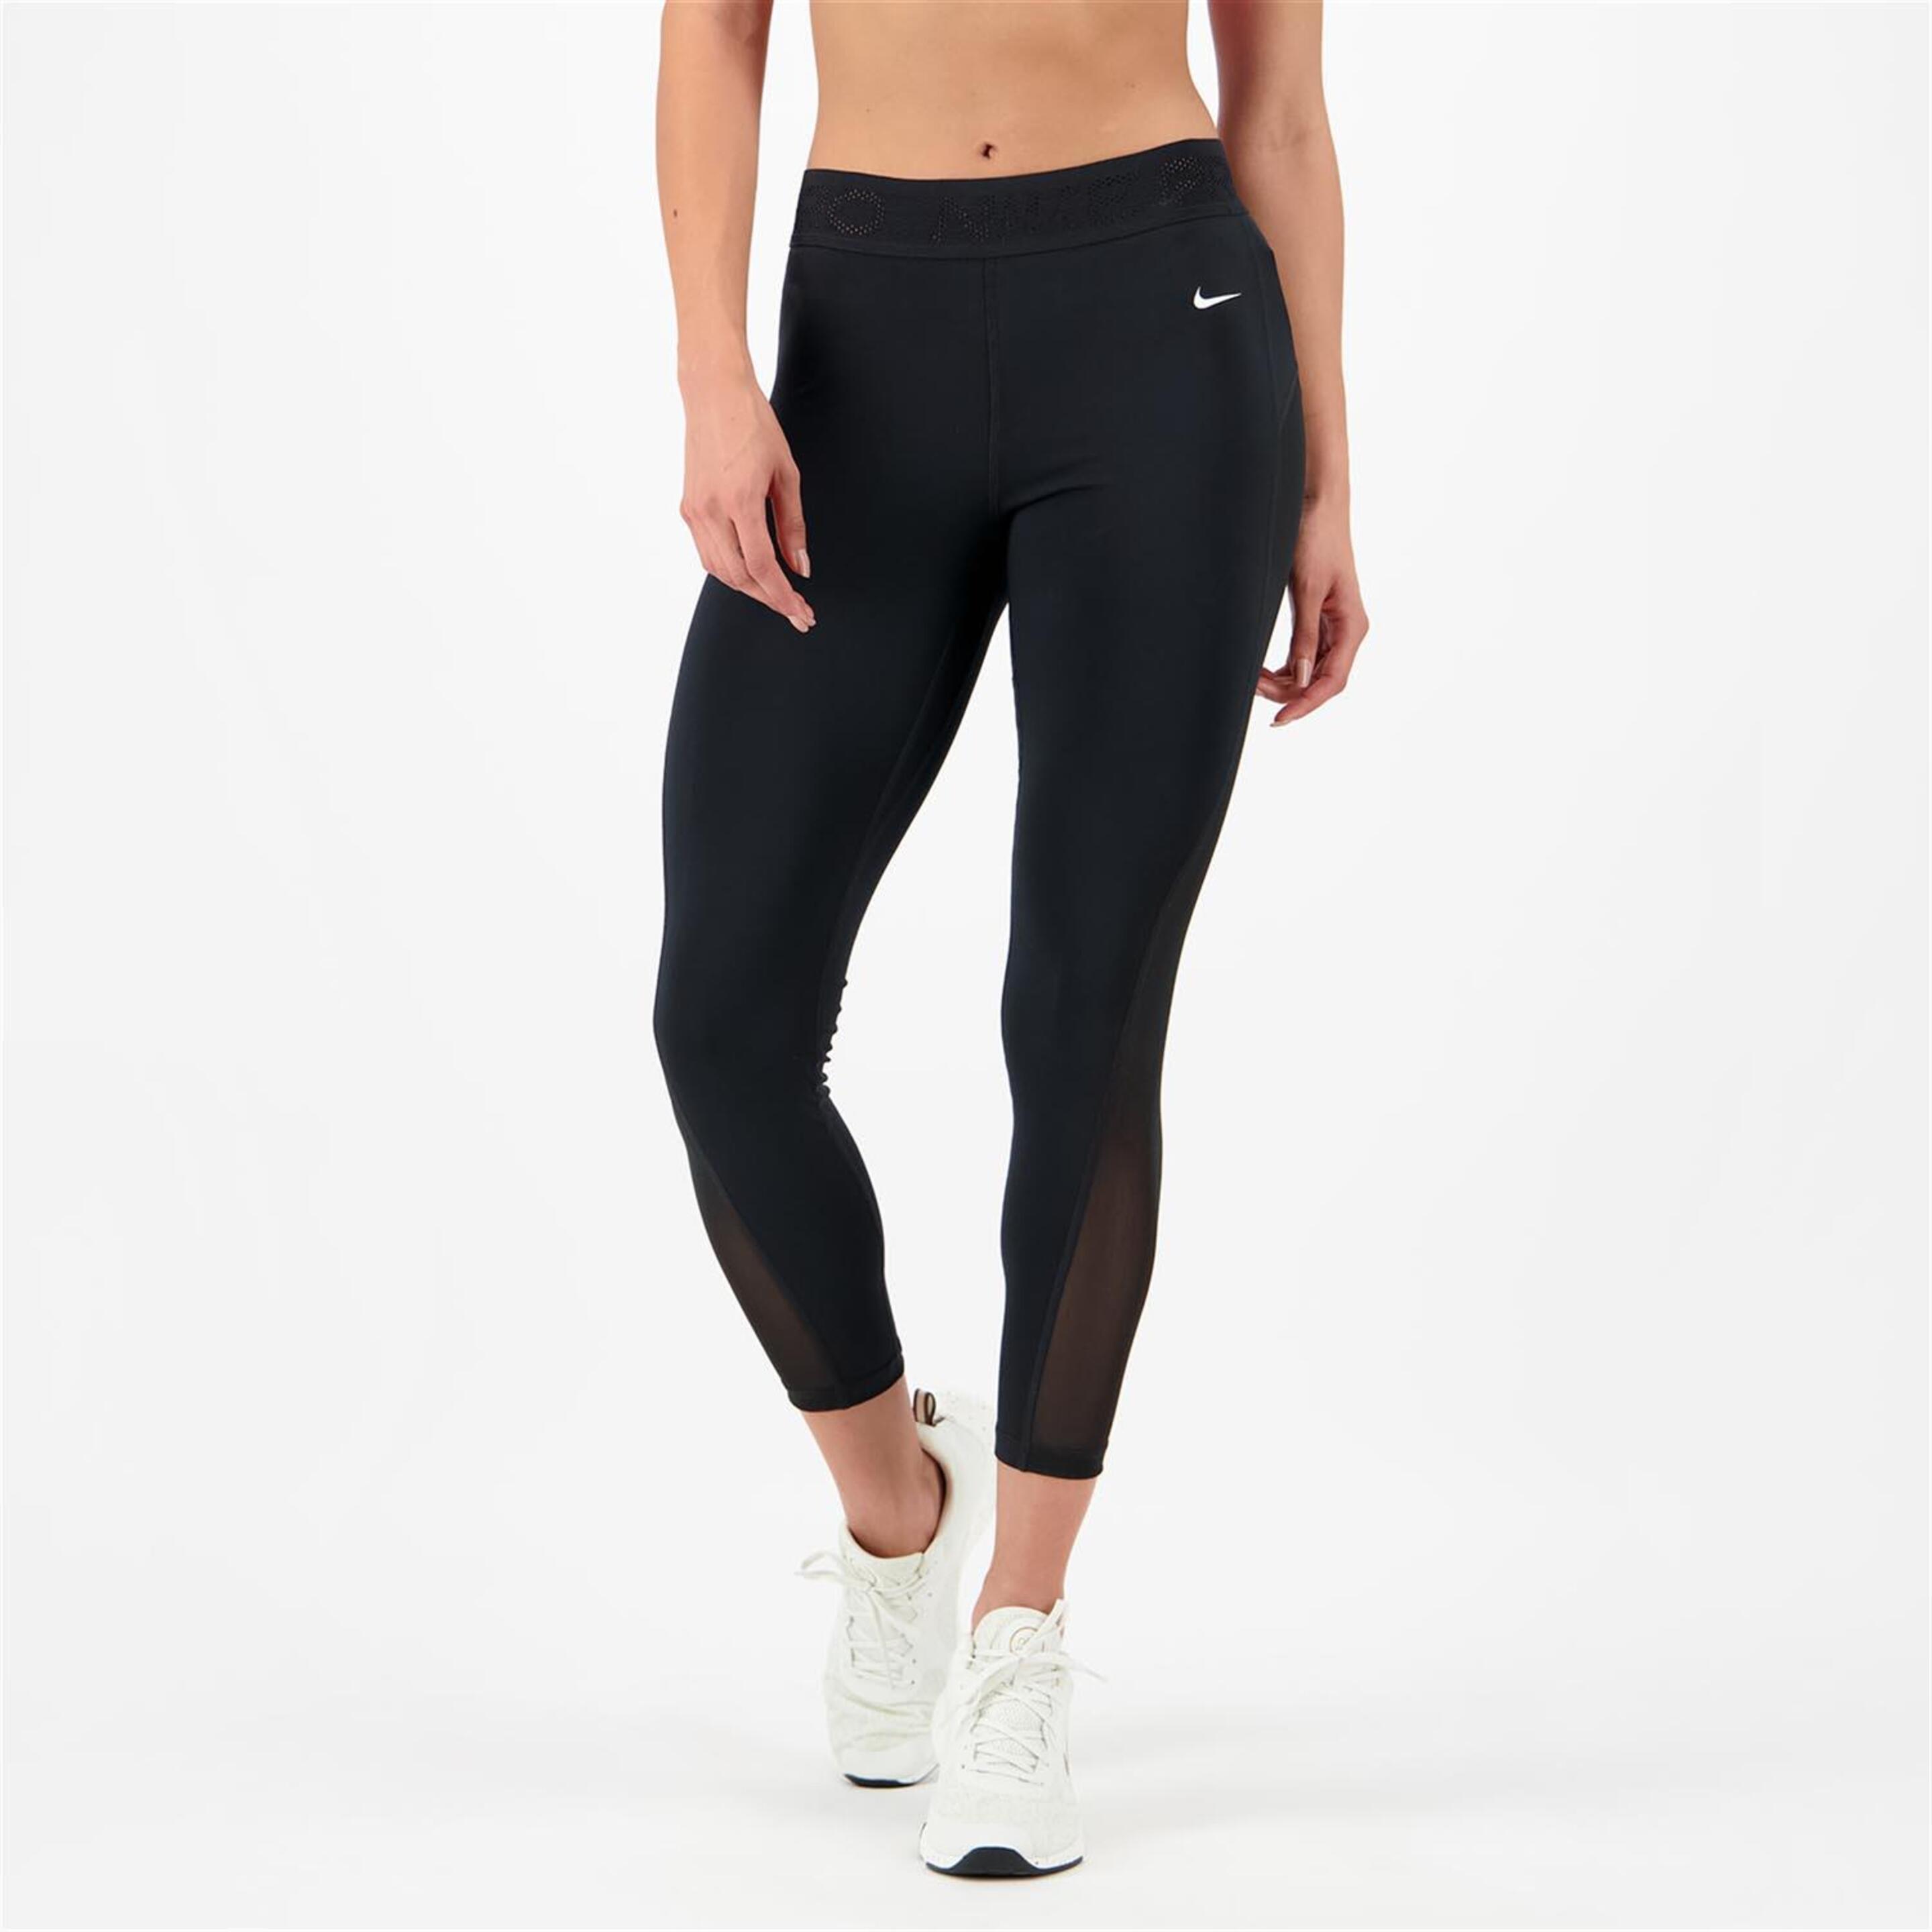 Nike Performance - negro - Mallas Transparencias Mujer